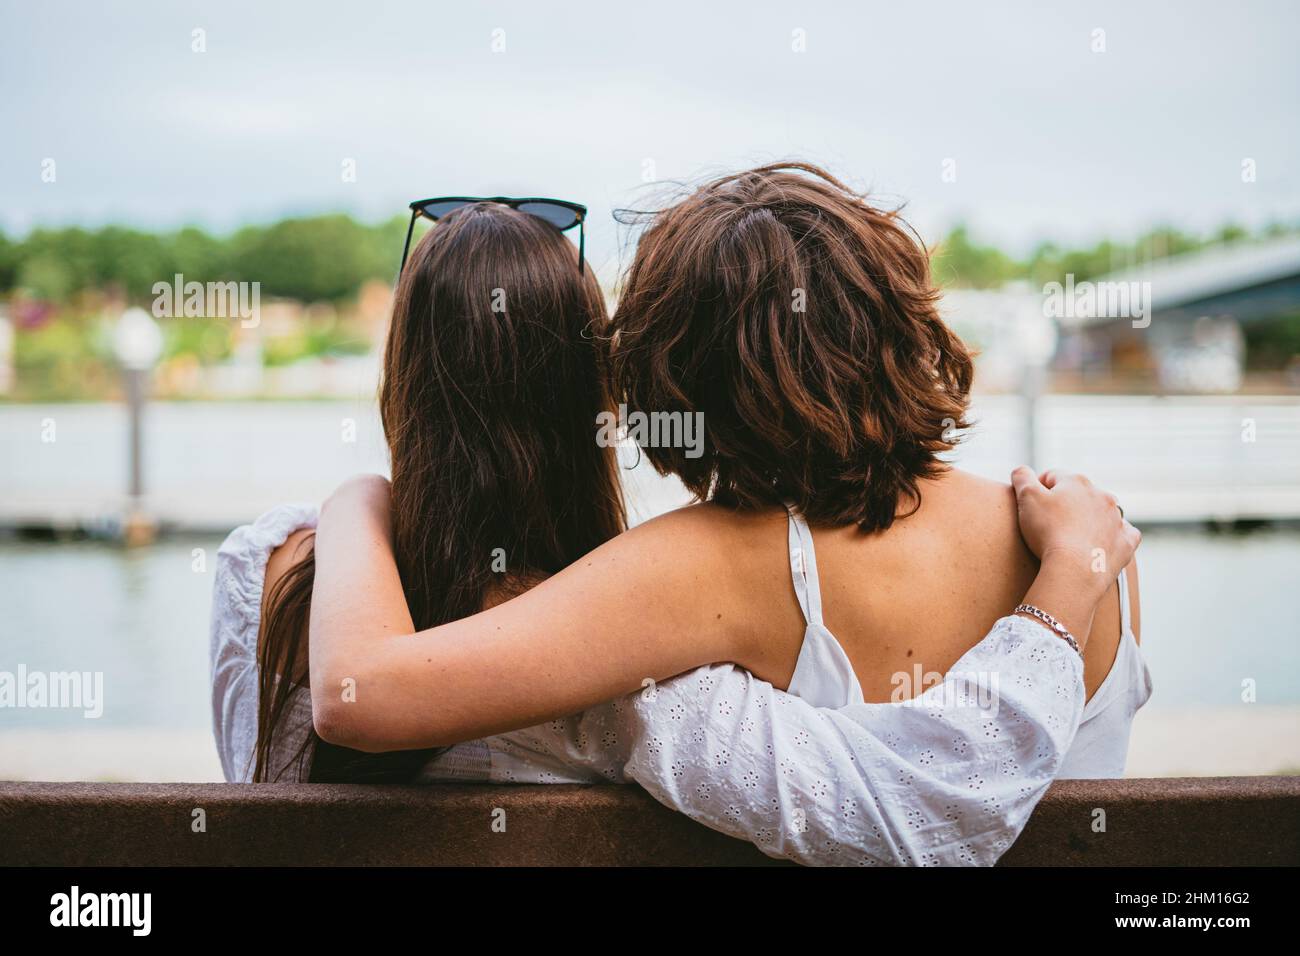 Rückansicht von zwei Teenagerfreunden, die auf einer Bank sitzen, während sie sich umarmen. Stockfoto